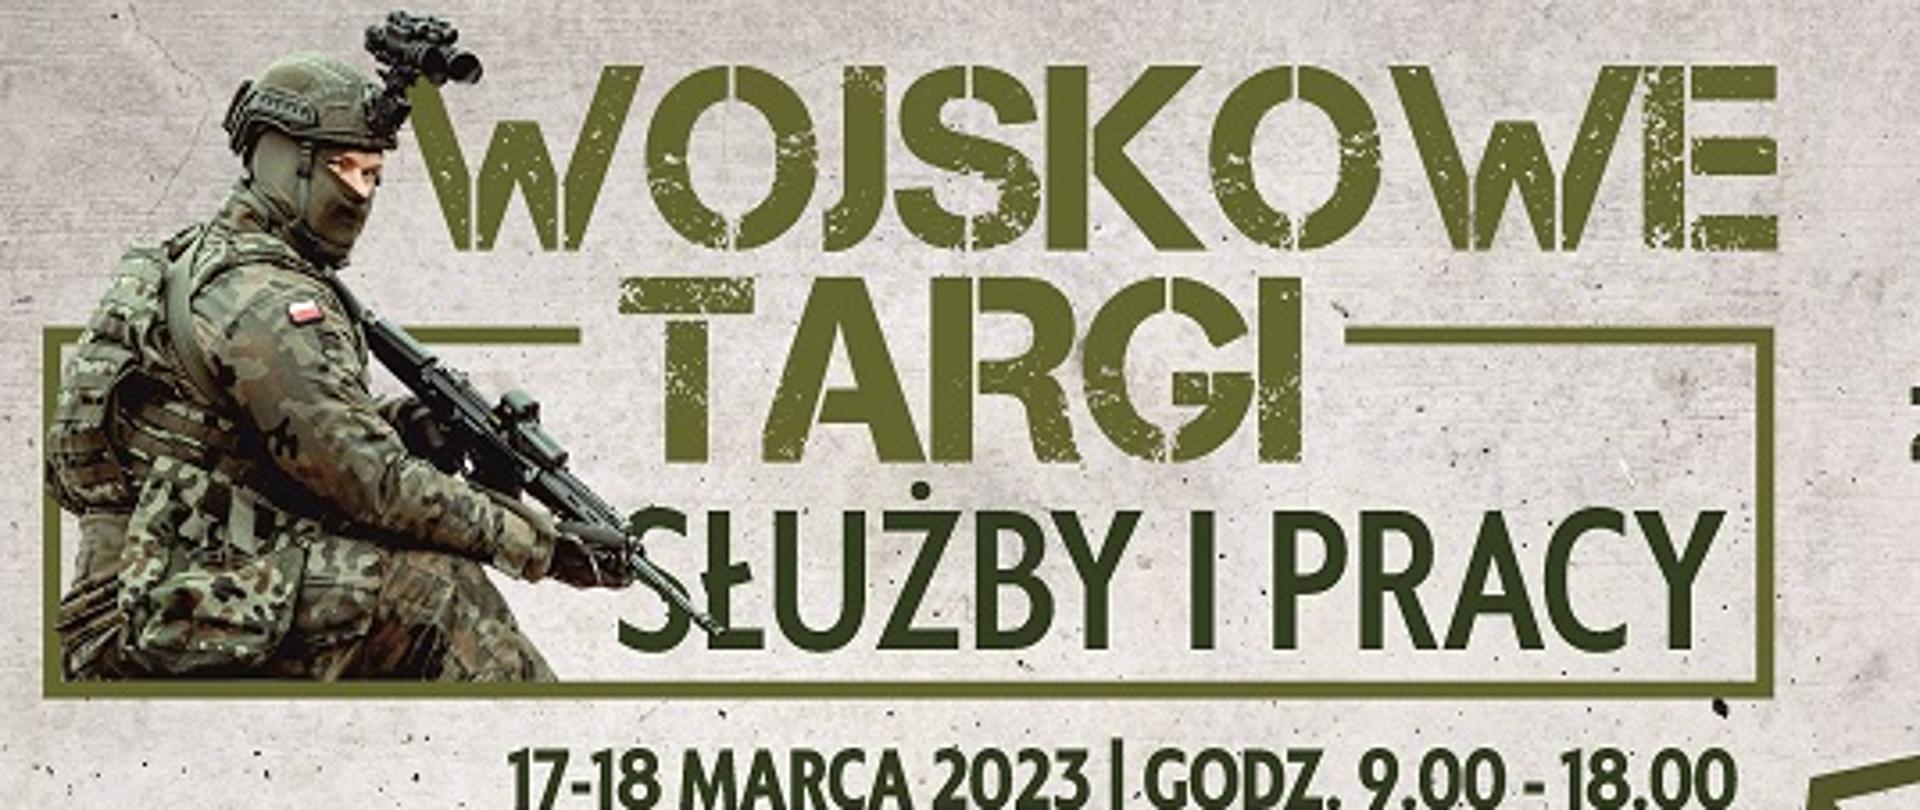 szare tło, ciemno zielonym kolorem wojskowe targi pracy i służby, z lewej stronie na górze żołnierz z karabinem z prawej strony mapa polski 